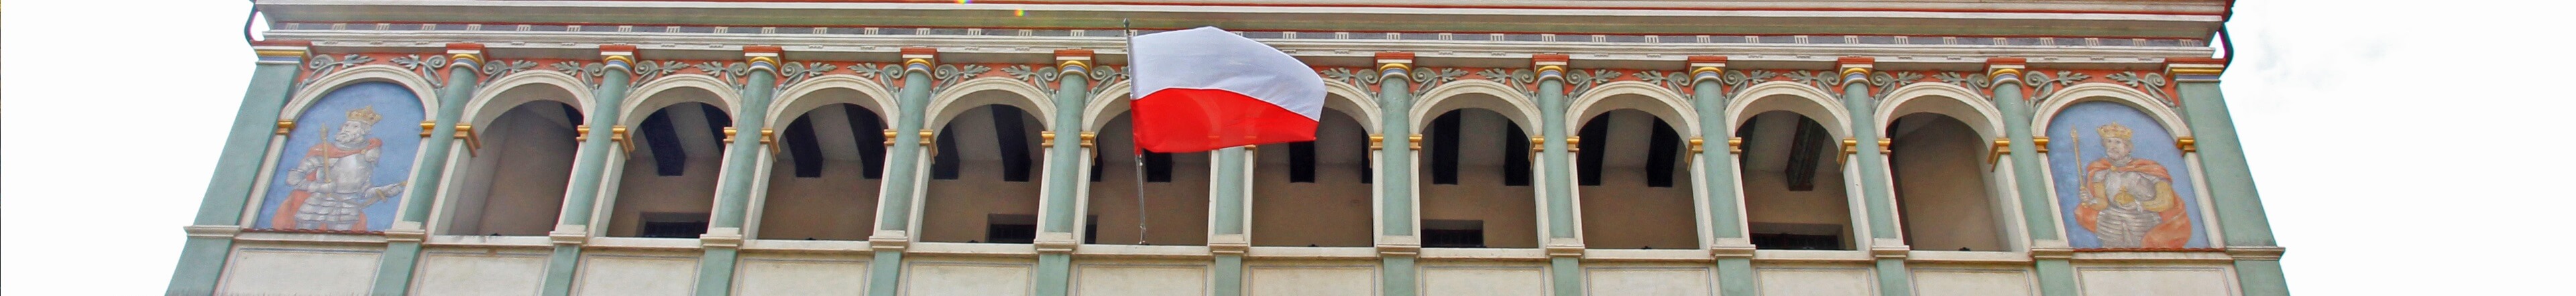 Poznań - flaga biało-czerwona powiewająca na pierwszym piętrze Ratusza